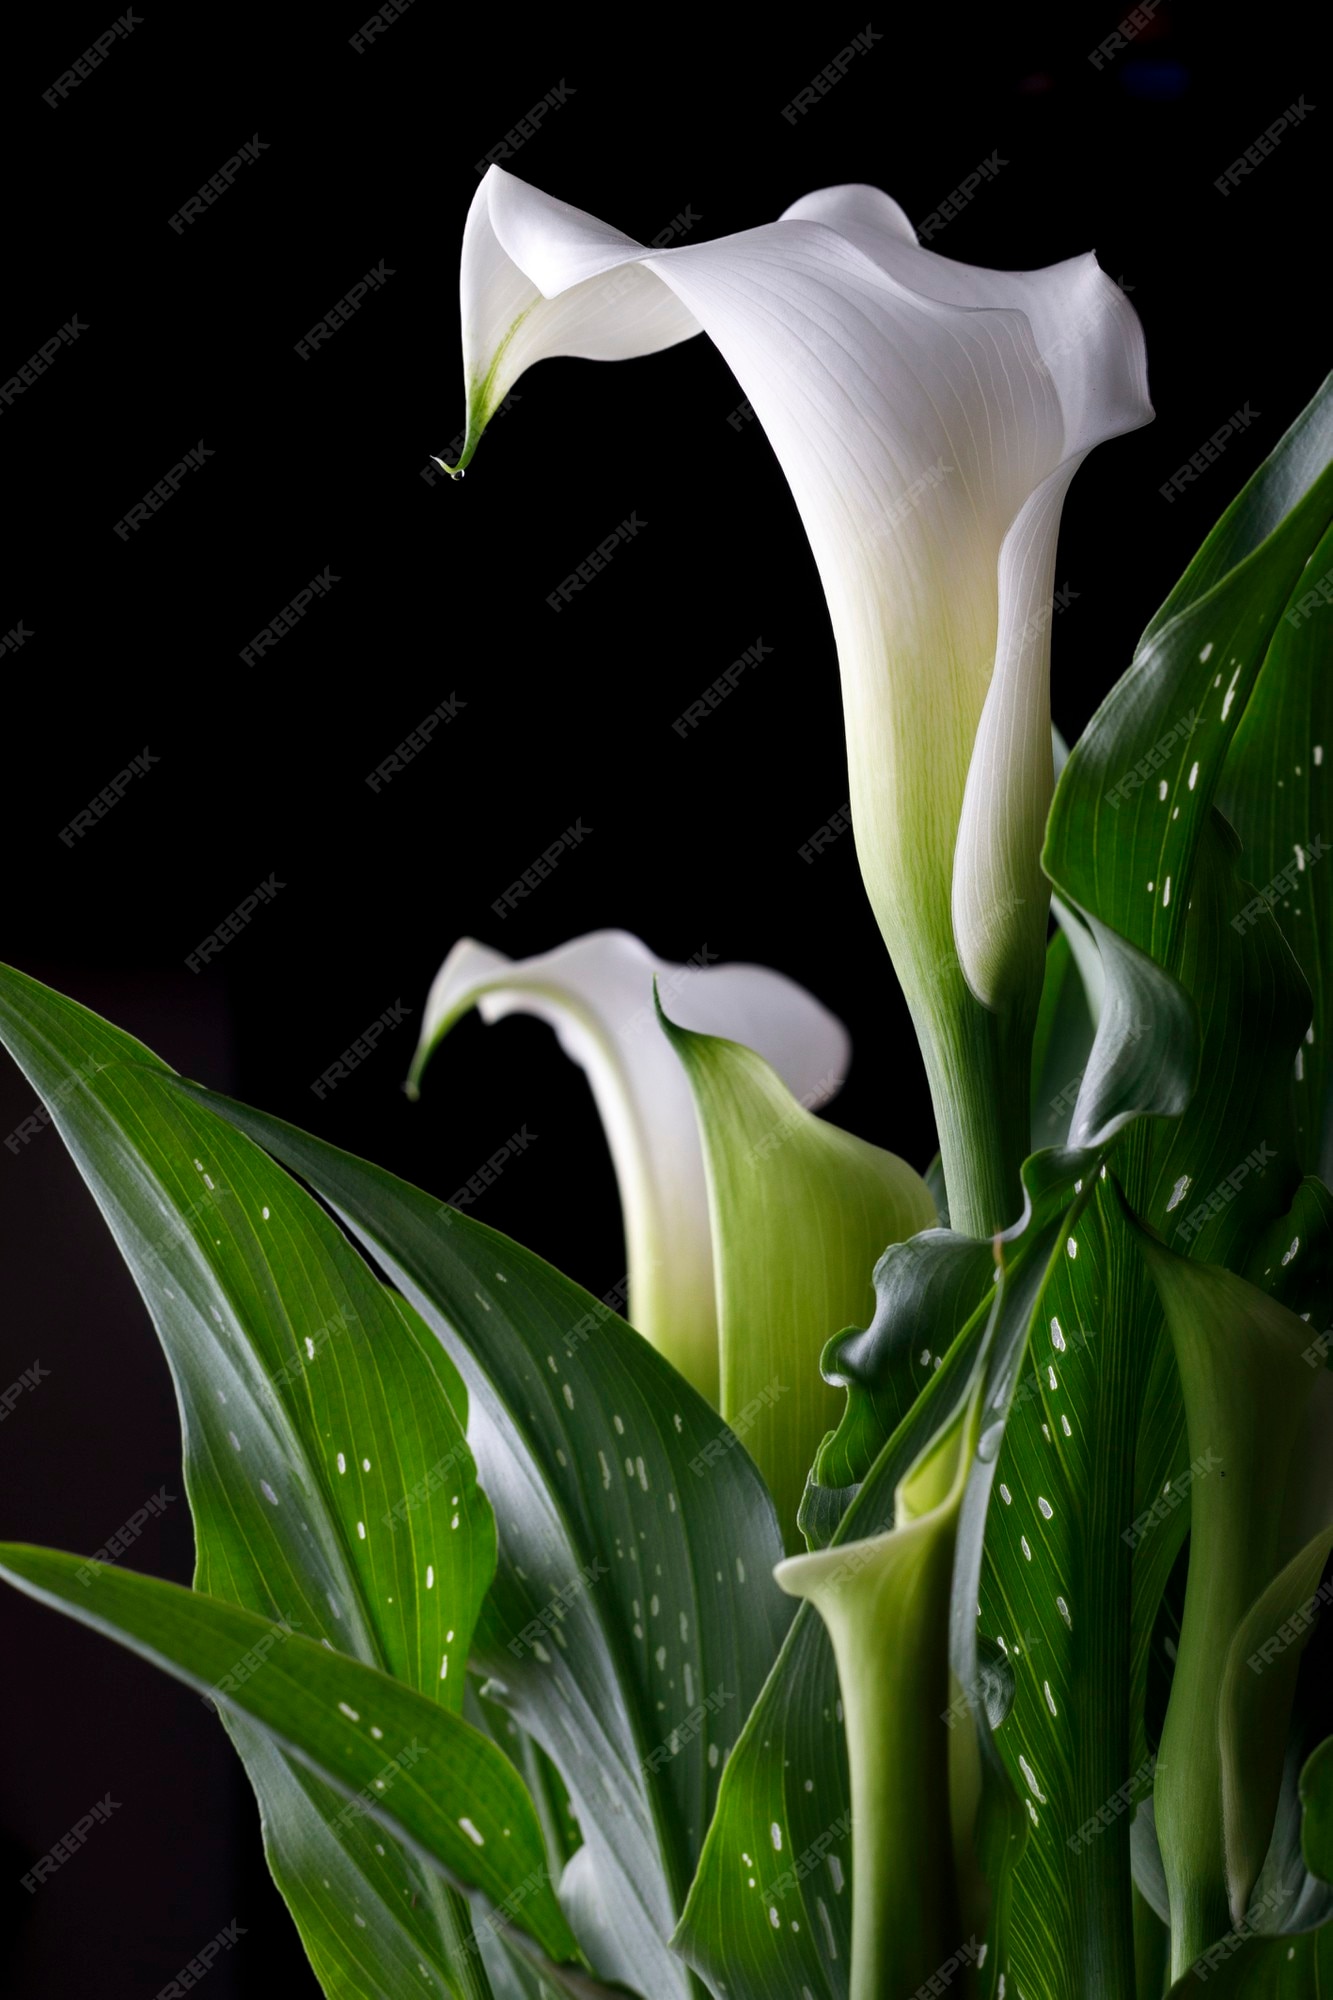 Flor de cala blanca con hojas verdes con fondo negro | Foto Premium